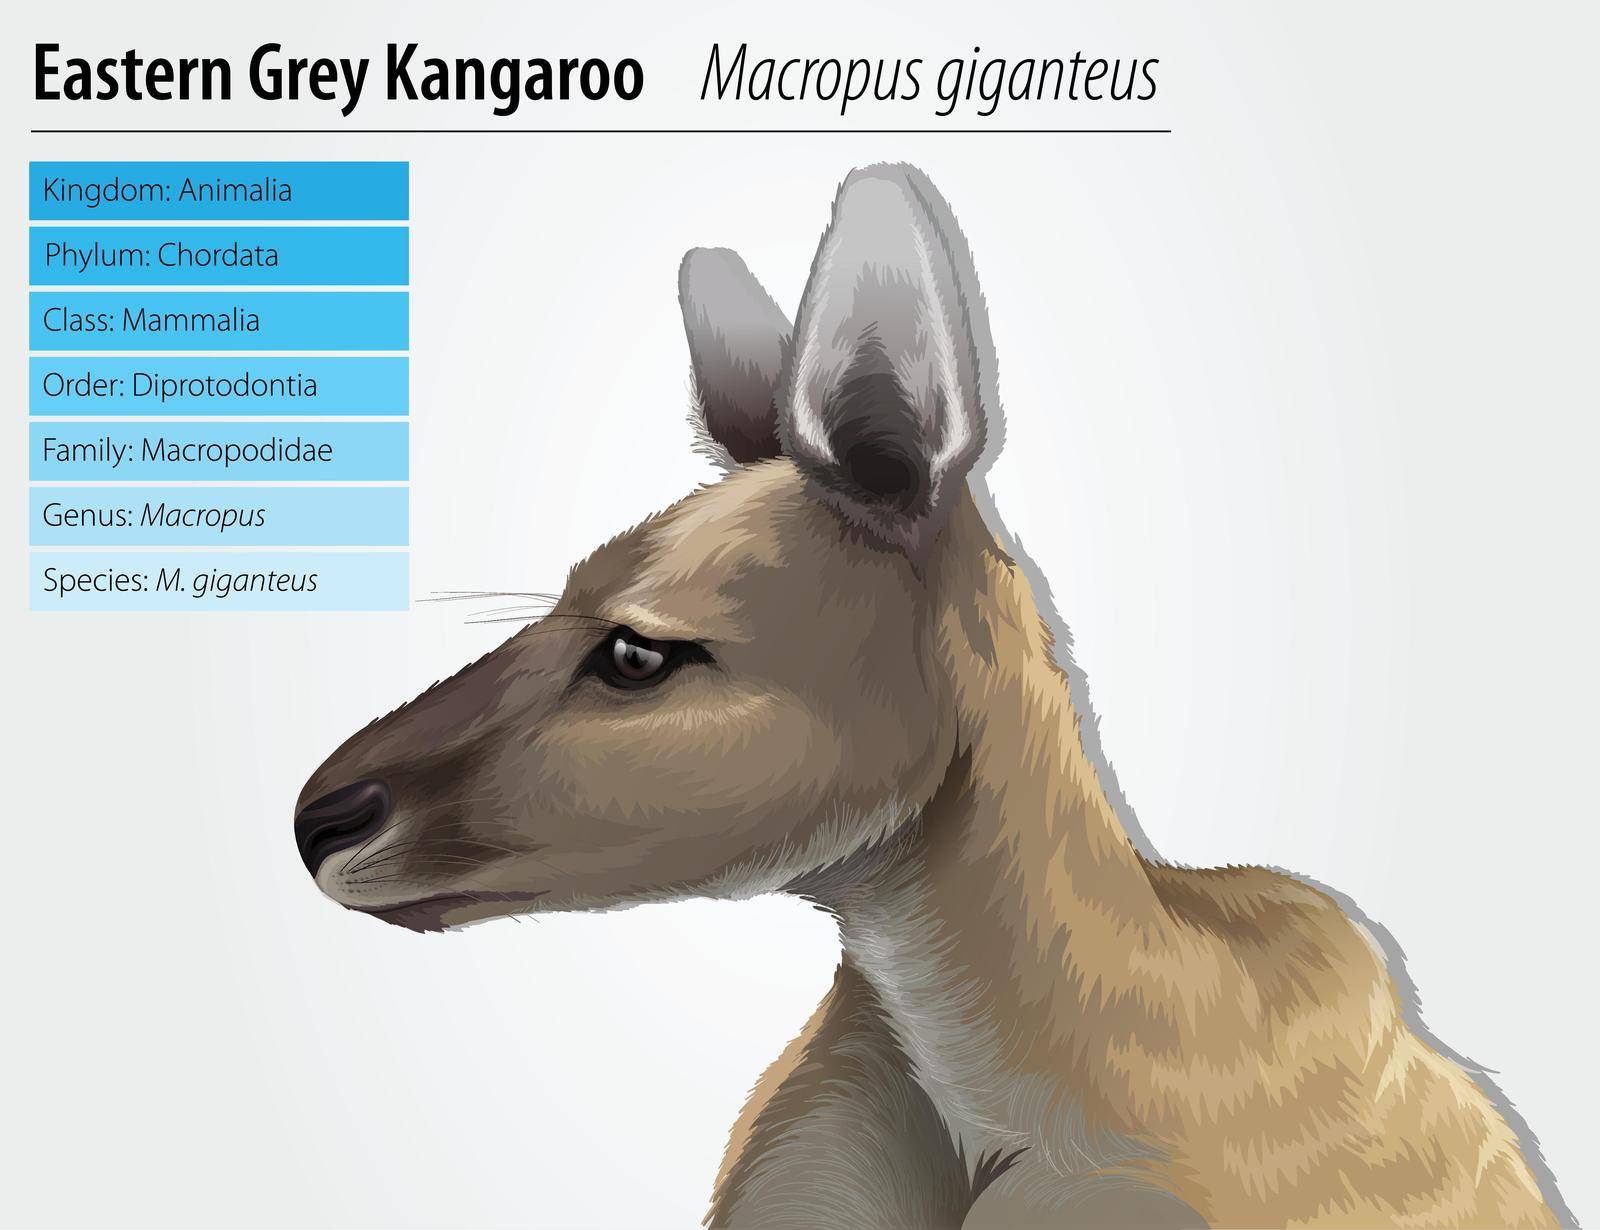 Eastern grey kangaroo - Macropus giganteus